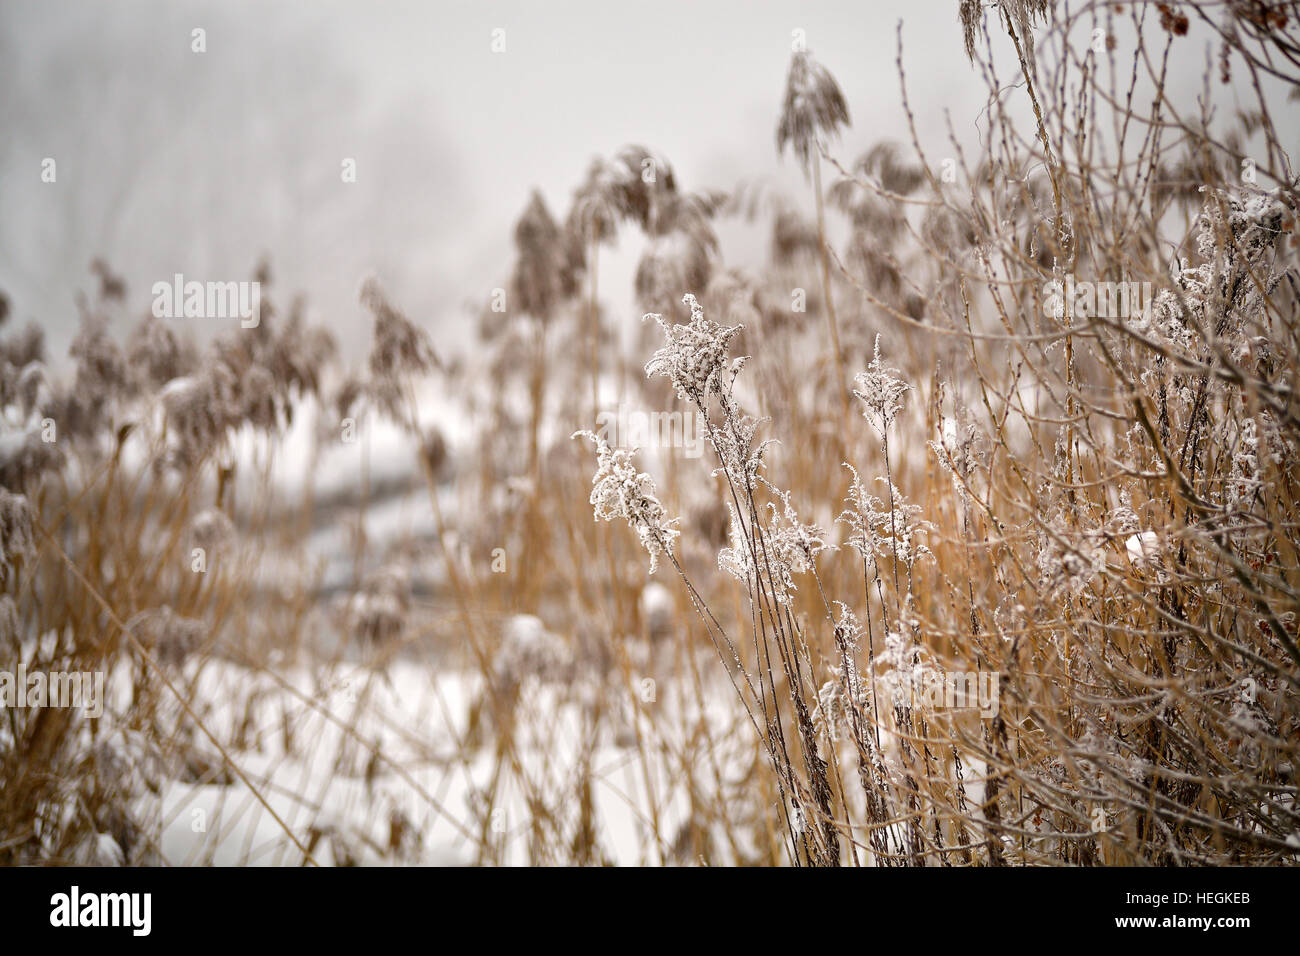 La neige et le givre sur la canne à sucre et l'herbe sur une rivière gelée misty. Couvert de neige. Banque D'Images